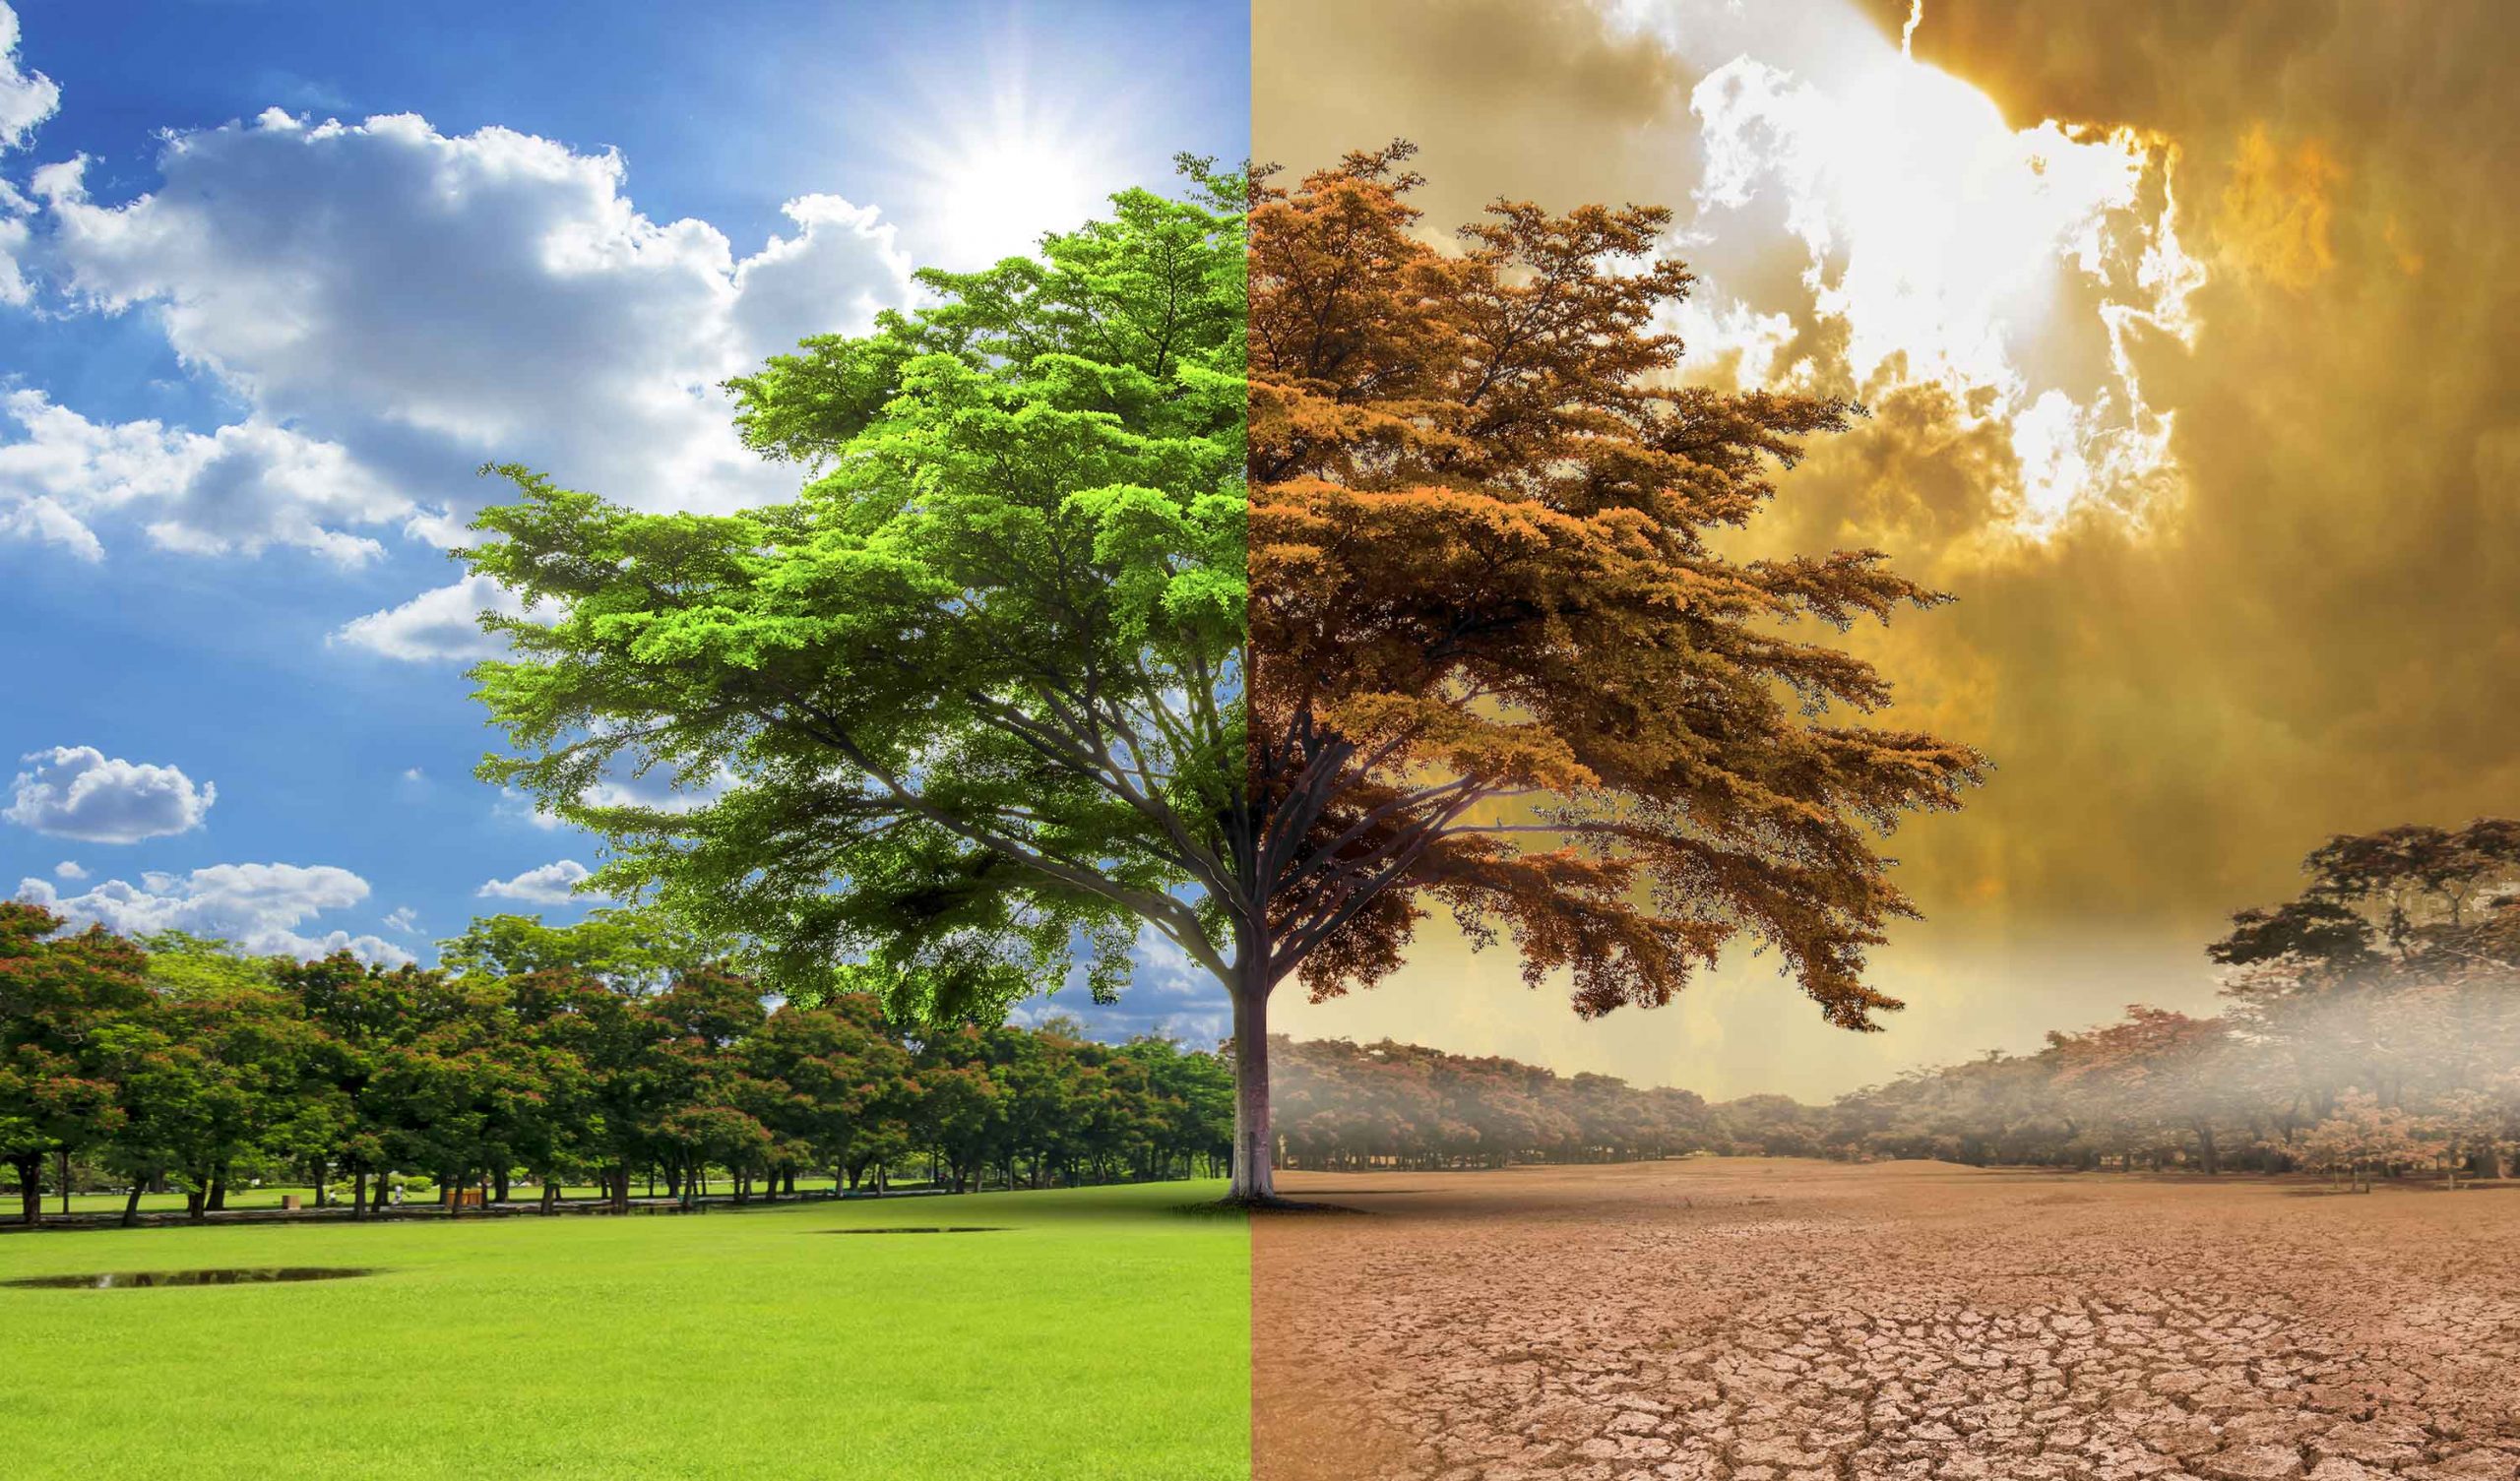 كلما اخضرّ كوكب الأرض، انخفضت وتيرة الاحتباس الحراري - تصدي البشر للاحتباس الحراري عبر زيادة الغطاء النباتي والأشجار على الأرض